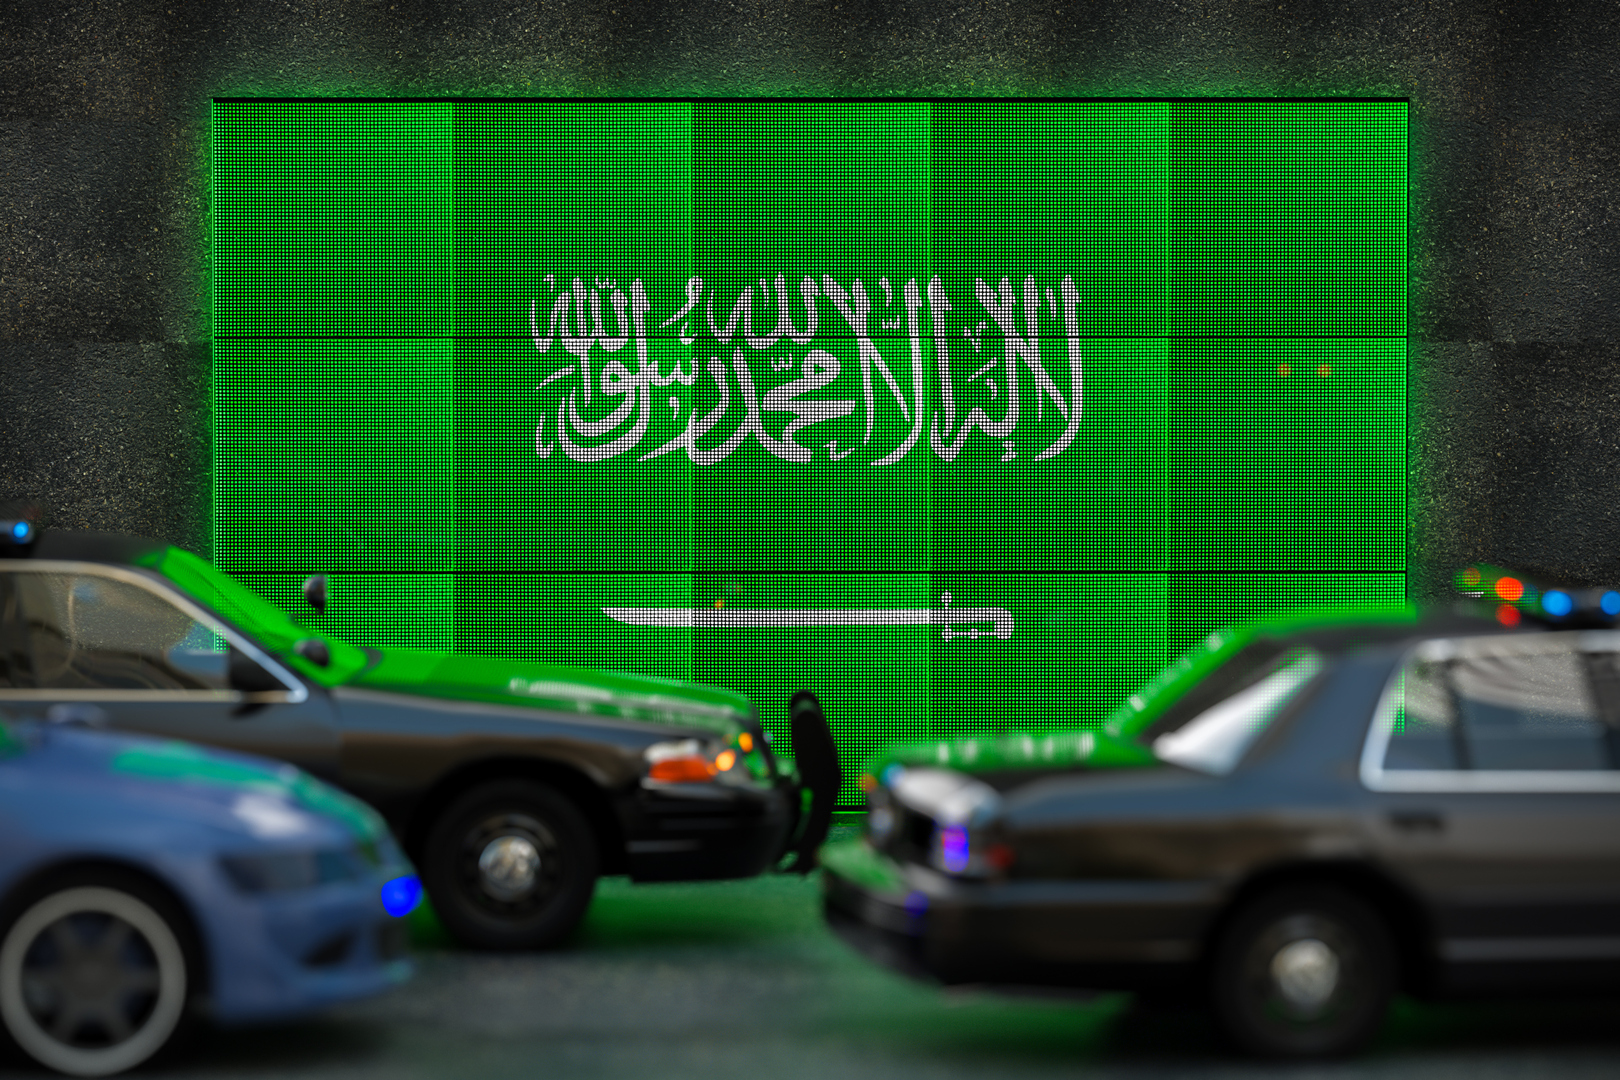 السعودية.. شرطة مكة تقبض على مواطن تركي بعد ظهوره في مقطع فيديو متداول أثار تفاعلا كبيرا (فيديو)